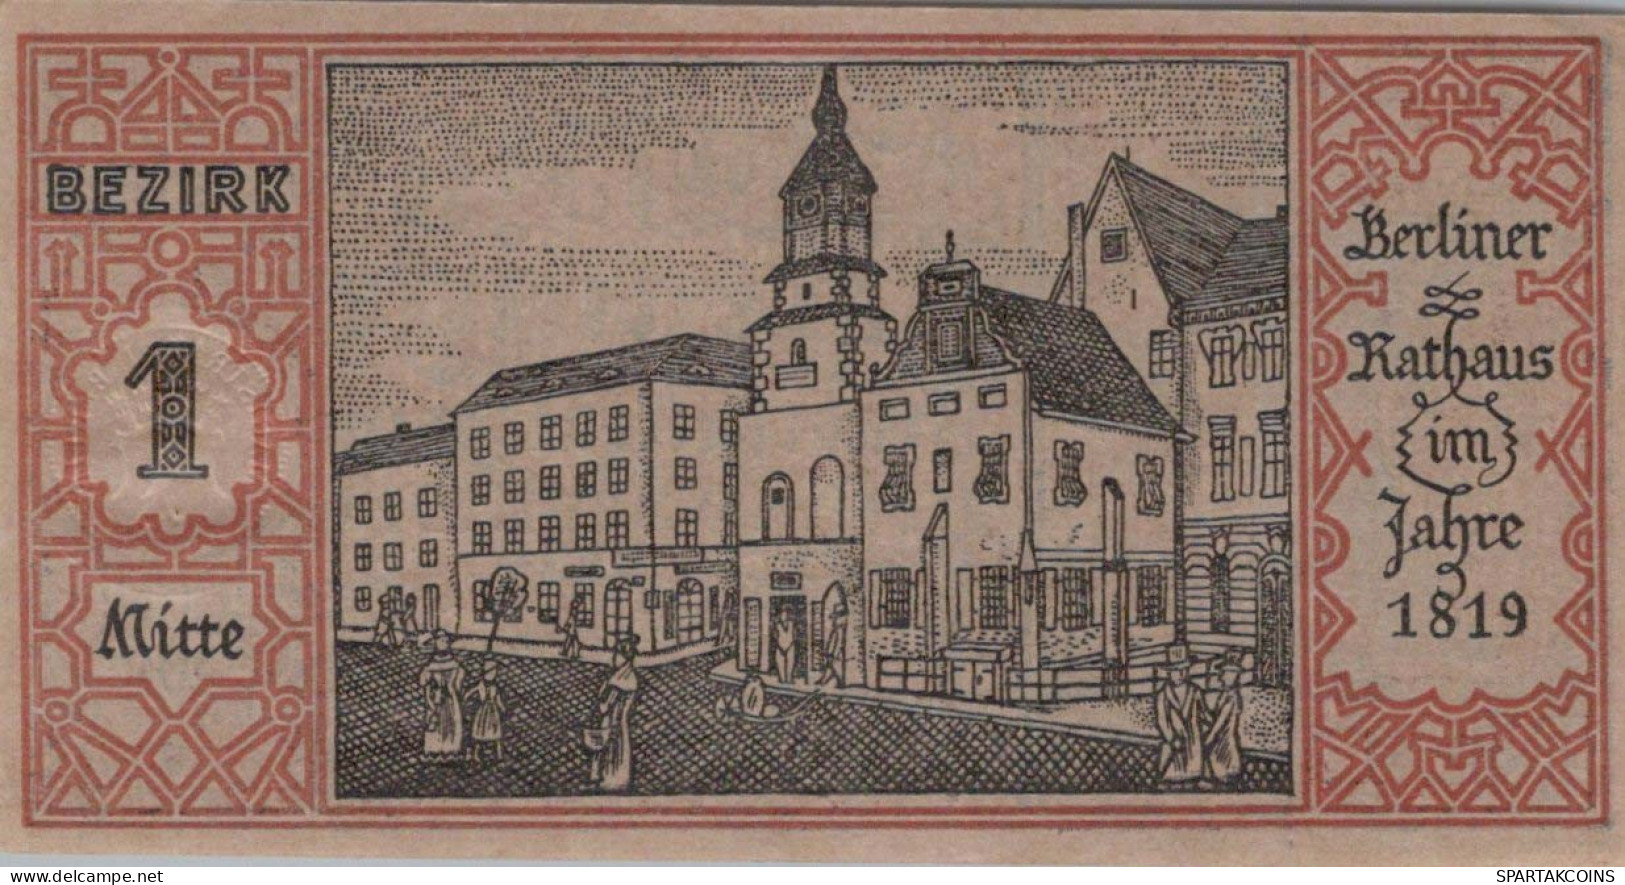 50 PFENNIG 1921 Stadt BERLIN UNC DEUTSCHLAND Notgeld Banknote #PA177 - [11] Emissioni Locali